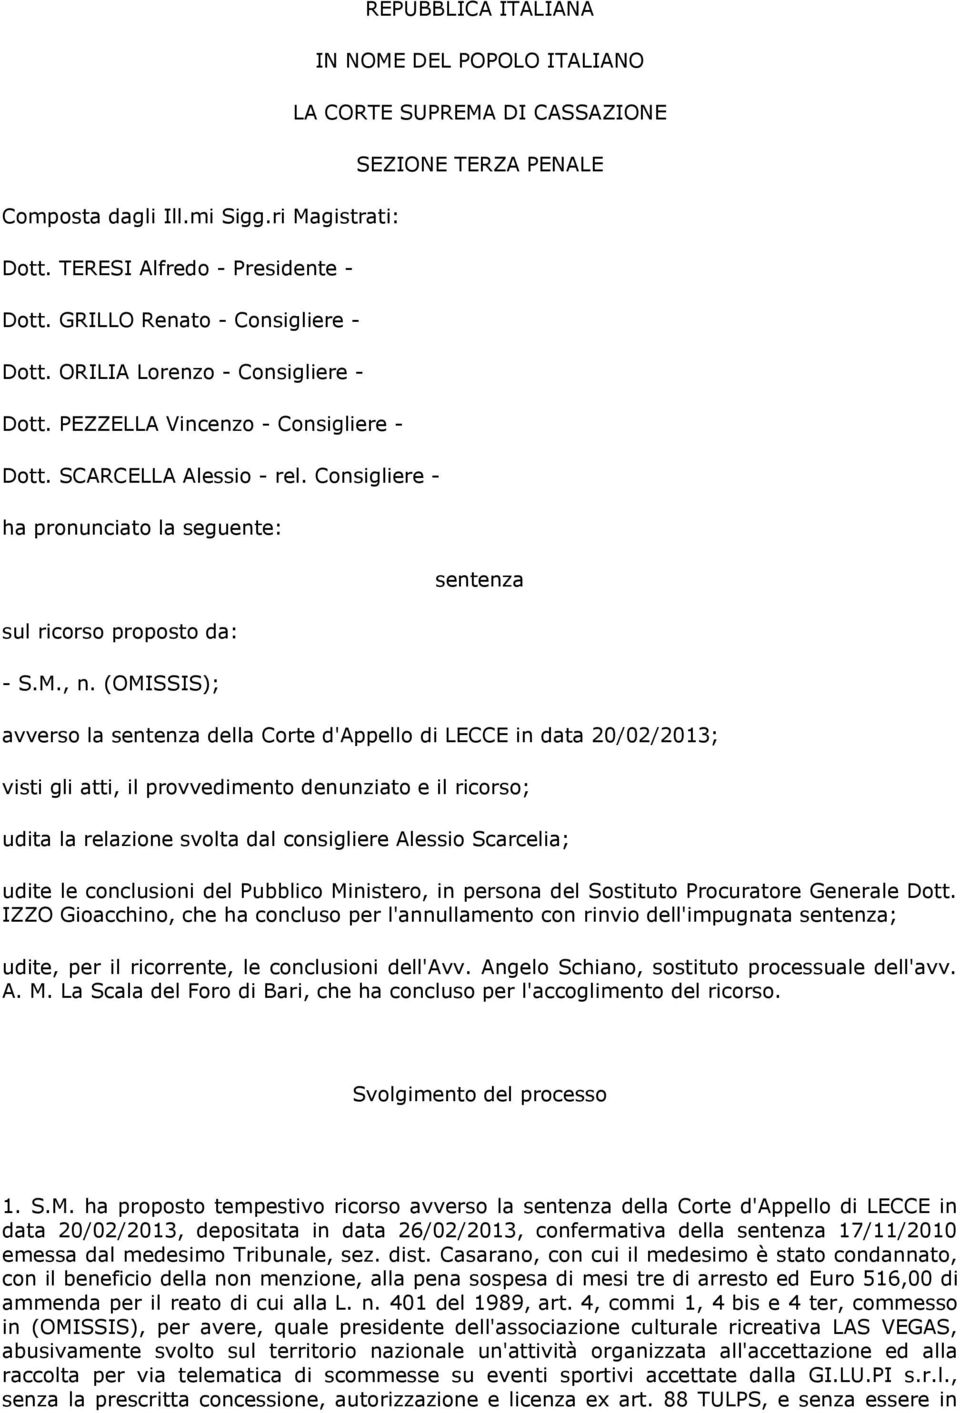 (OMISSIS); REPUBBLICA ITALIANA IN NOME DEL POPOLO ITALIANO LA CORTE SUPREMA DI CASSAZIONE SEZIONE TERZA PENALE sentenza avverso la sentenza della Corte d'appello di LECCE in data 20/02/2013; visti